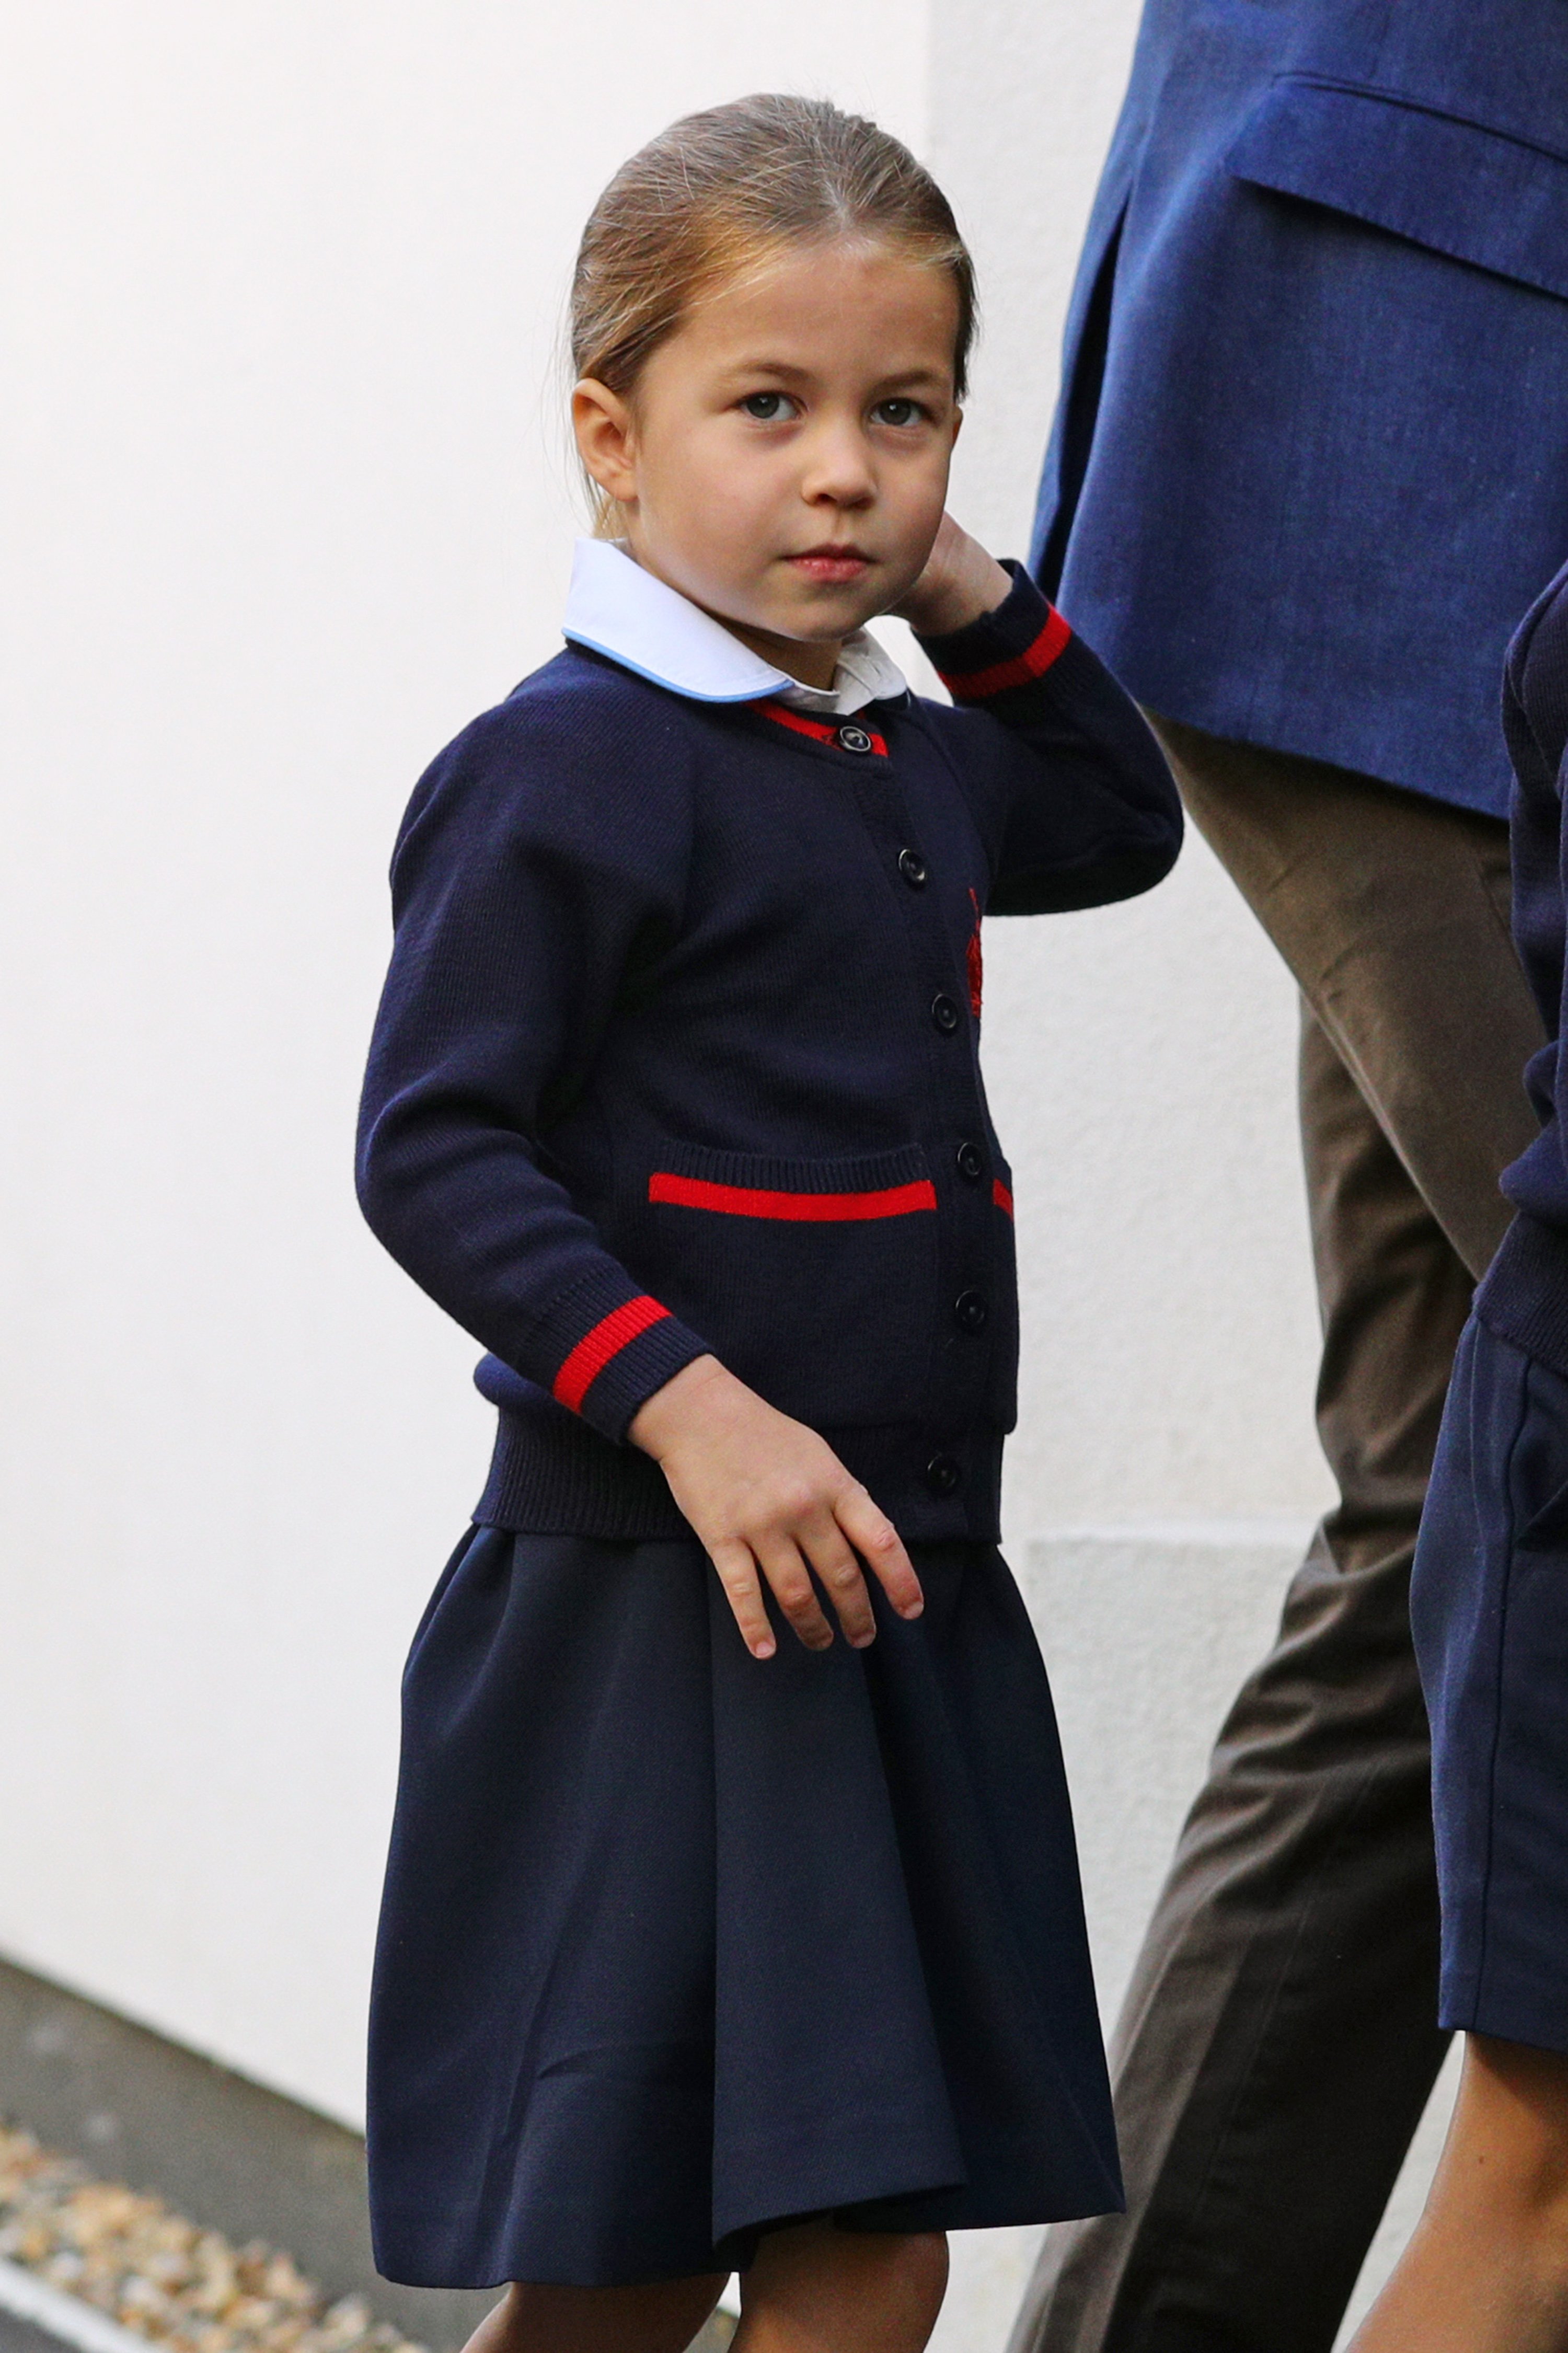 La princesa Charlotte llegando a su primer día de colegio en el Thomas's Battersea de Londres el 5 de septiembre de 2019, en Londres, Inglaterra | Foto: Getty Images